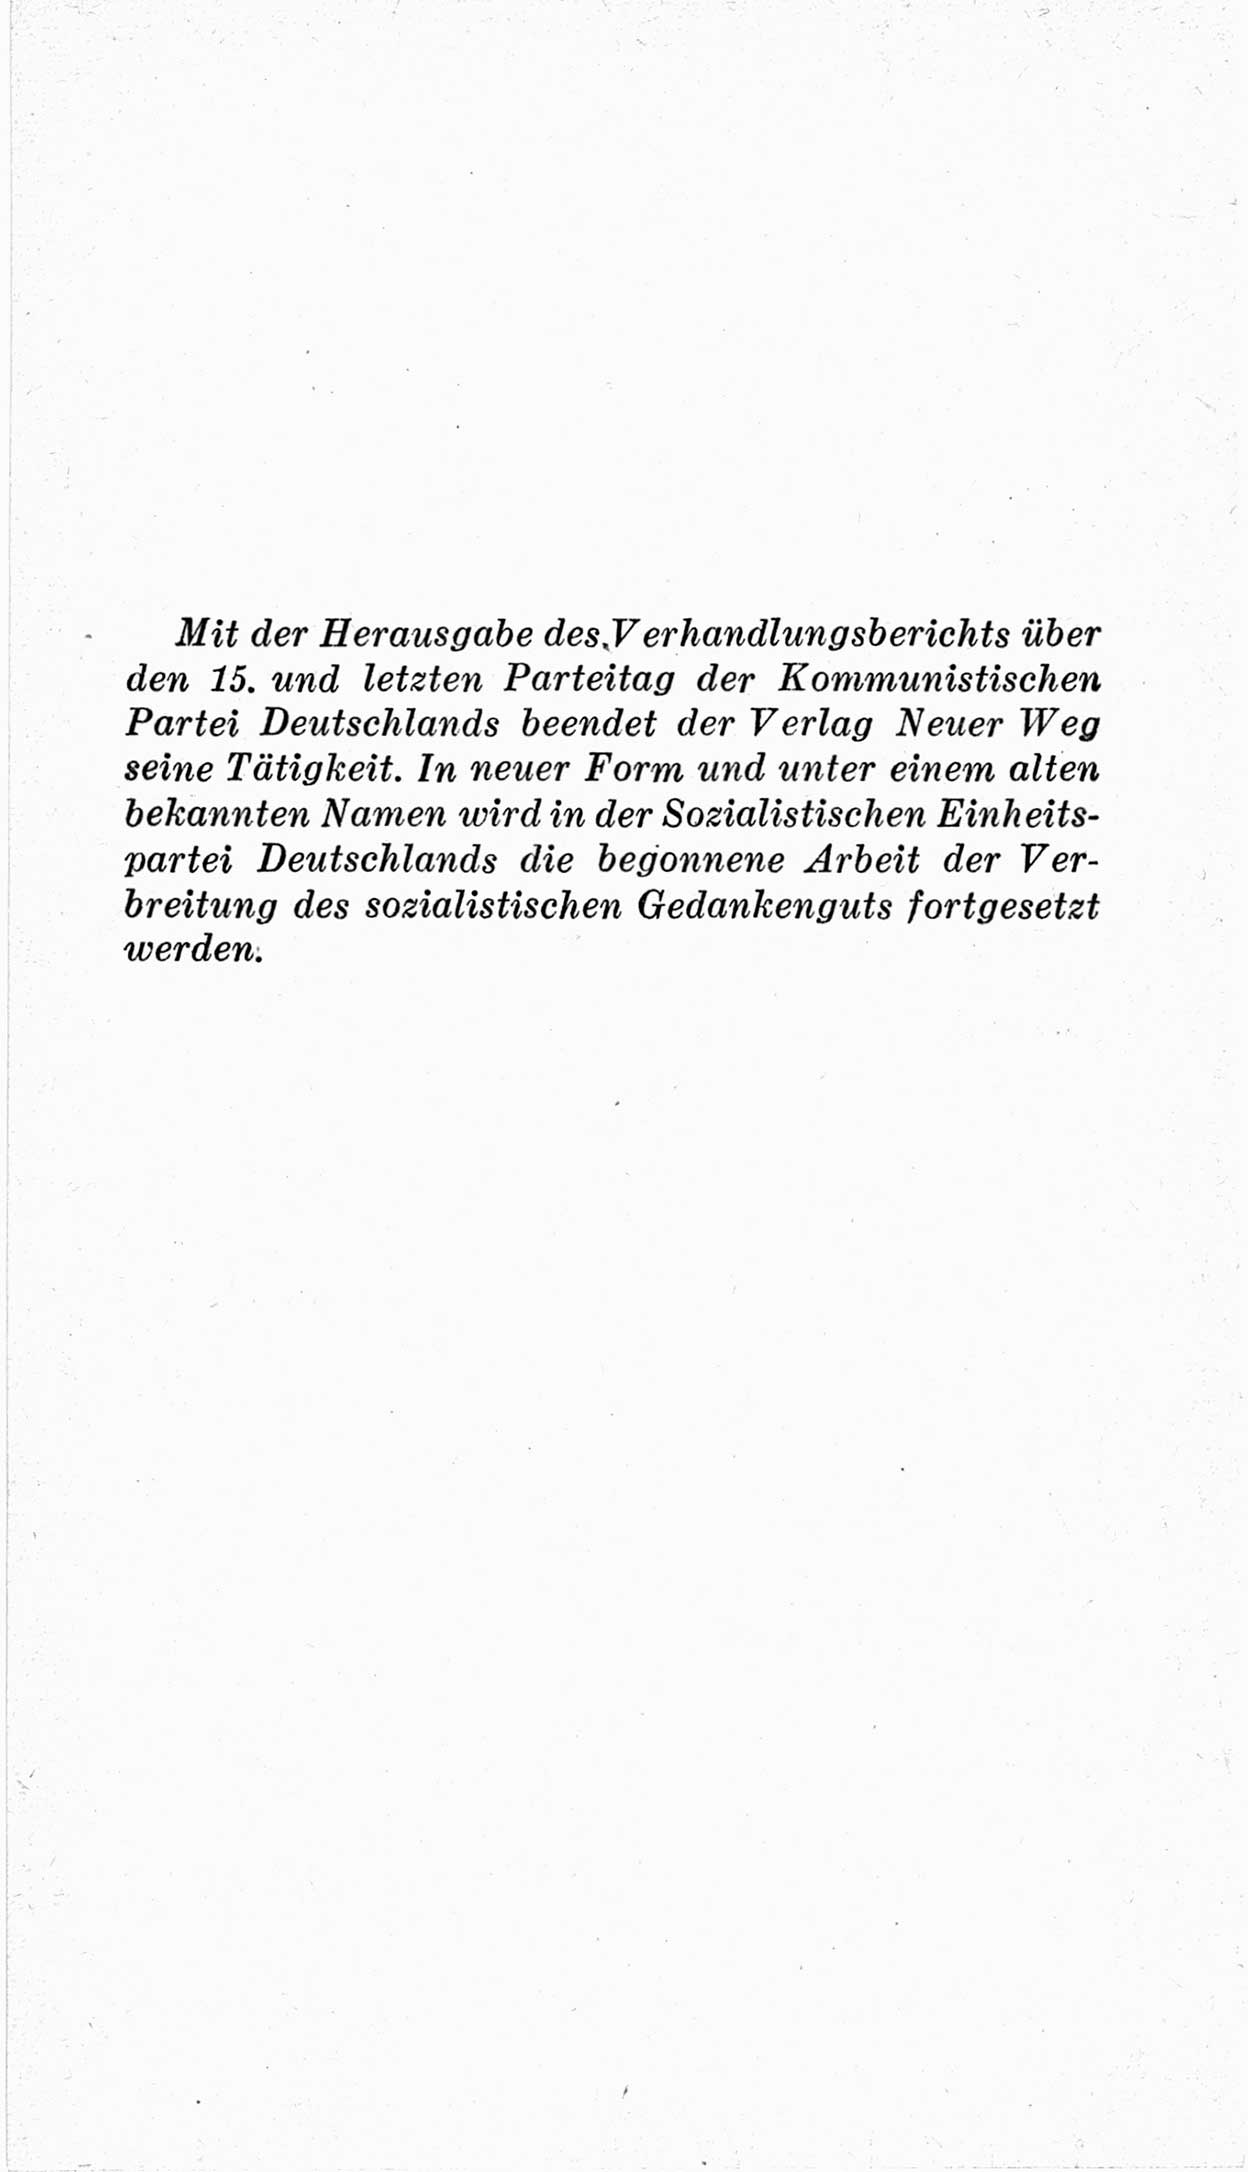 Bericht über die Verhandlungen des 15. Parteitages der Kommunistischen Partei Deutschlands (KPD) [Sowjetische Besatzungszone (SBZ) Deutschlands] am 19. und 20. April 1946 in Berlin, Seite 12 (Ber. Verh. 15. PT KPD SBZ Dtl. 1946, S. 12)